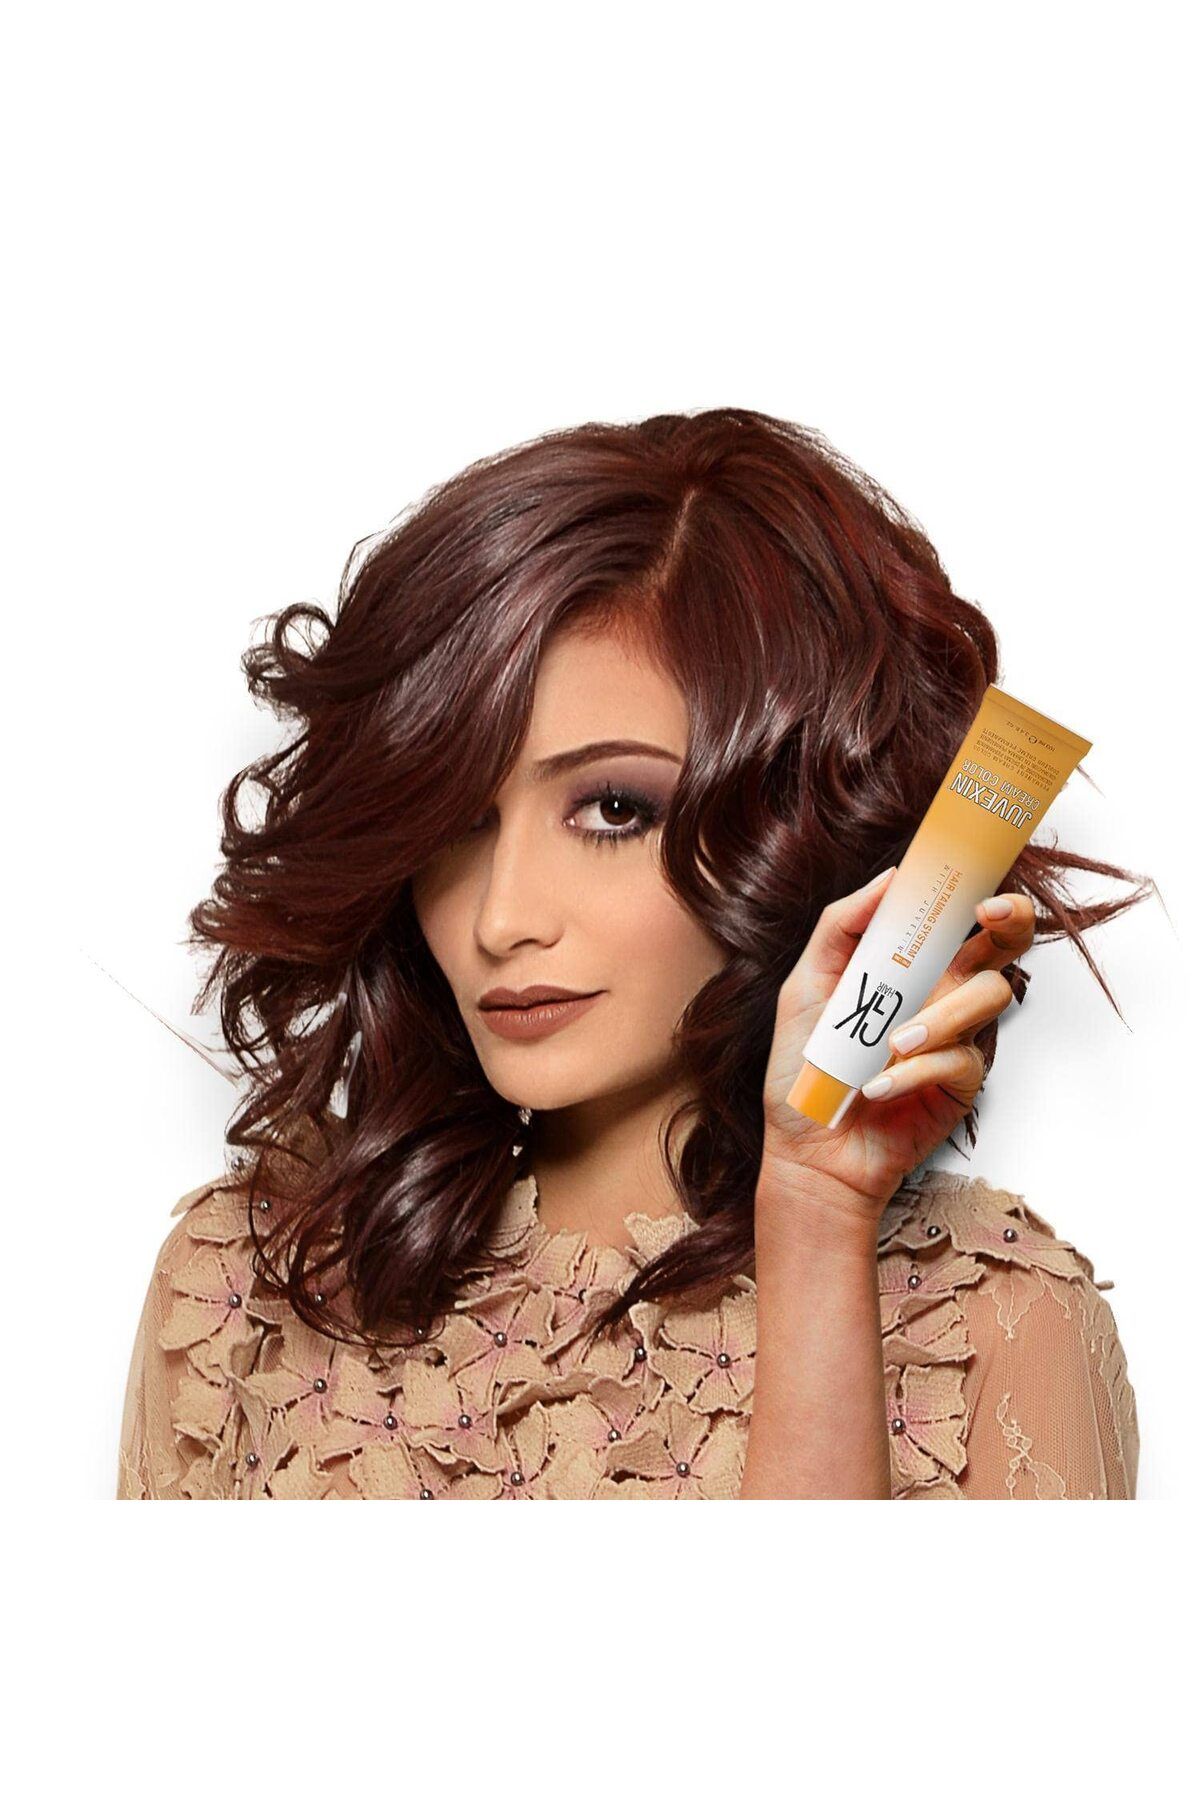 GK HAIR Juvexin Cream Color Saç Boyası 100 ml 3 Koyu Kahve